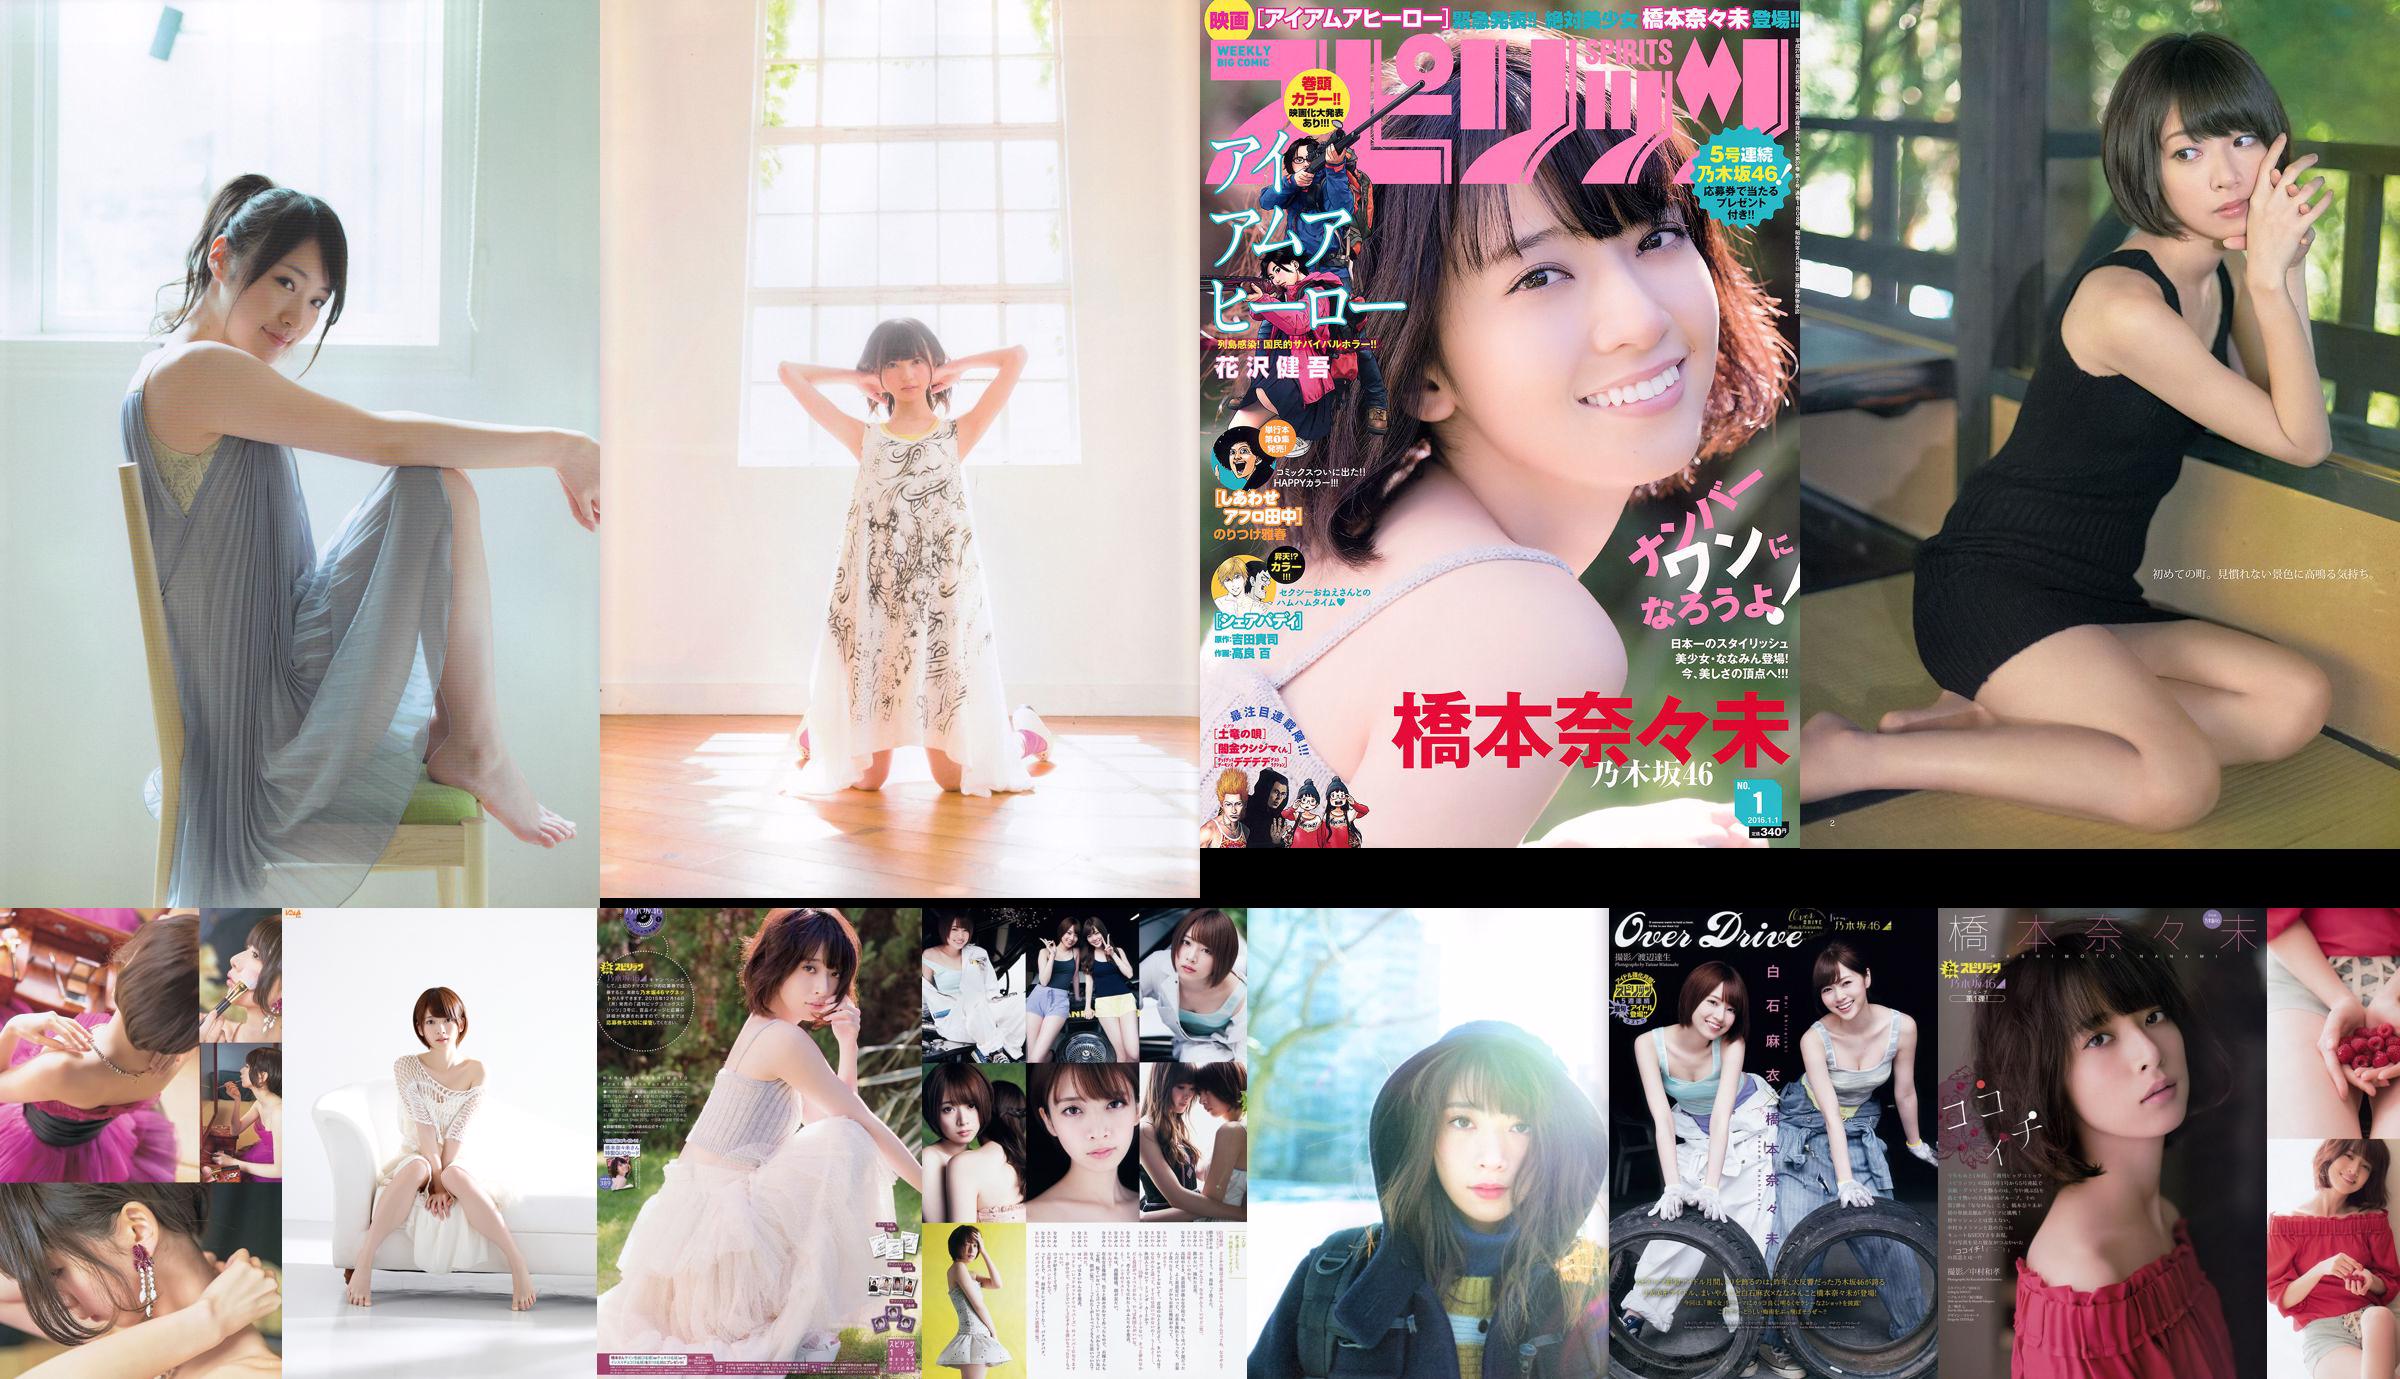 Hashimoto Nasumi Momokawa Haruka Private Ebisu Junior High School [Wöchentlicher Jungsprung] 2013 No.51 Photo Magazine No.fd897e Seite 5